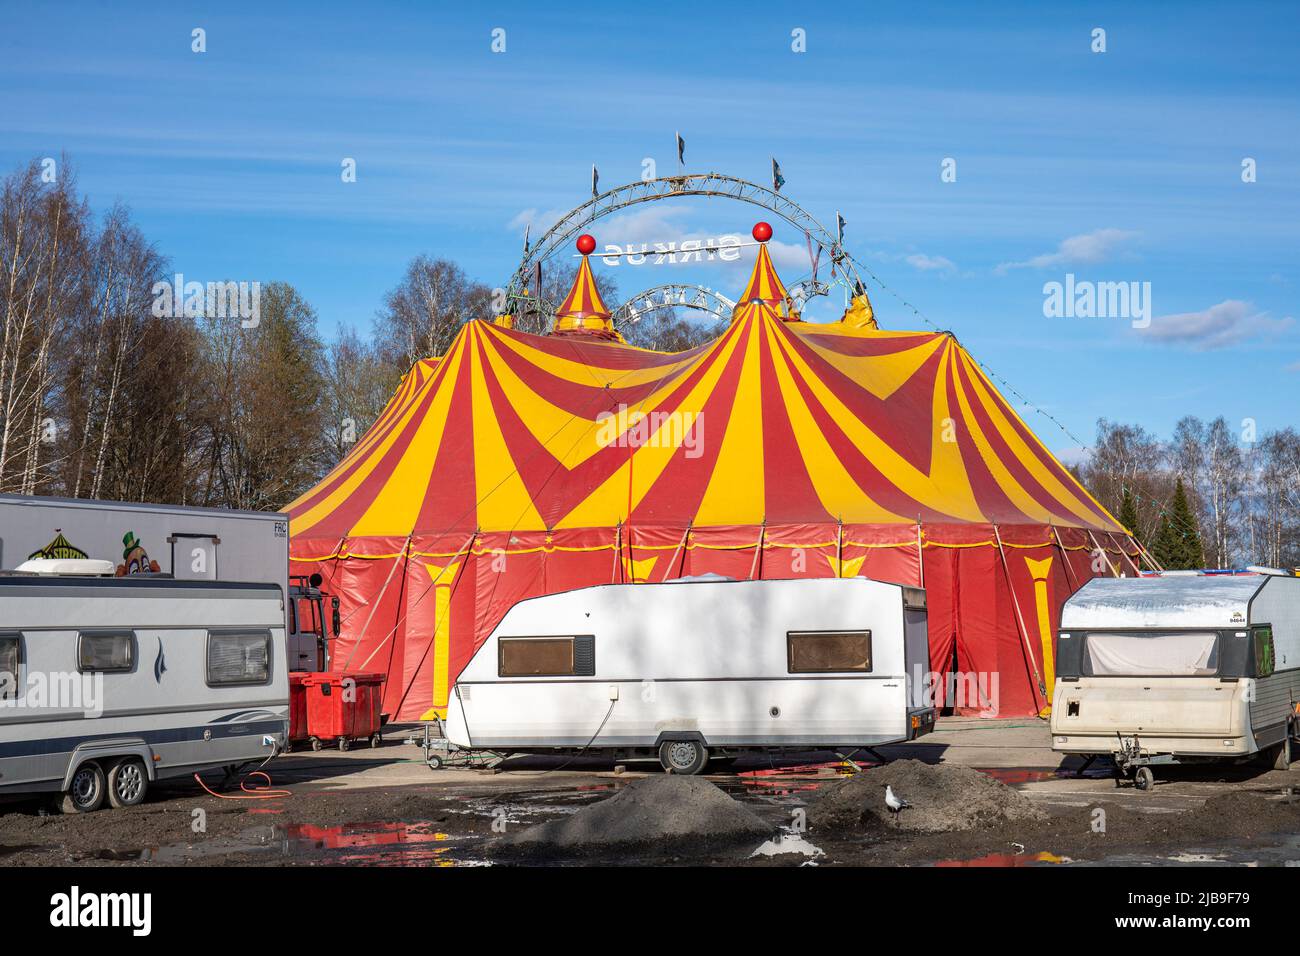 Sirkus Tähti circus tent in Eteläpuisto park in Tampere, Finland Stock Photo